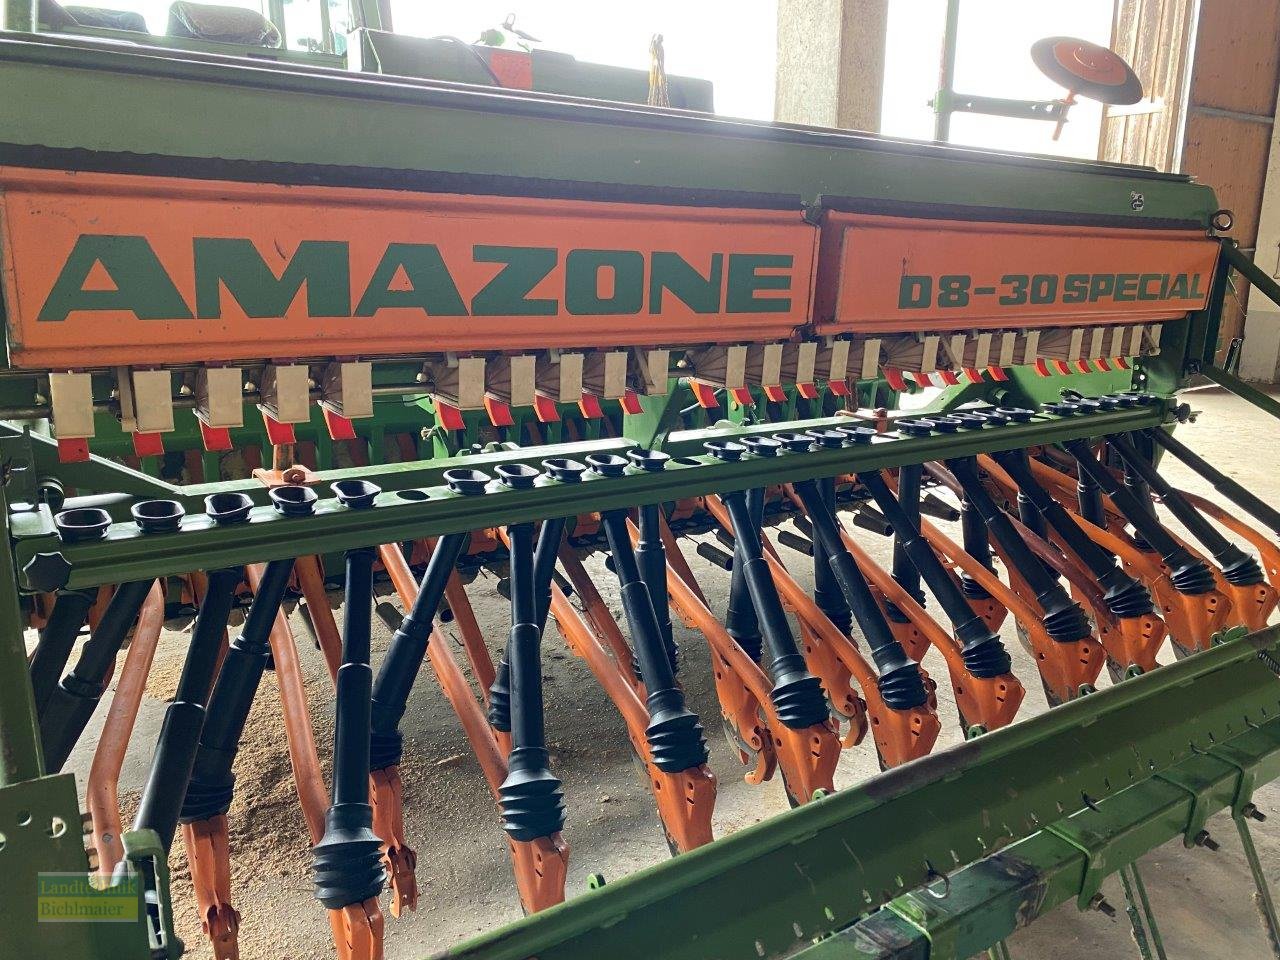 Drillmaschine типа Amazone D8-30 Special, Gebrauchtmaschine в Ehekirchen (Фотография 1)